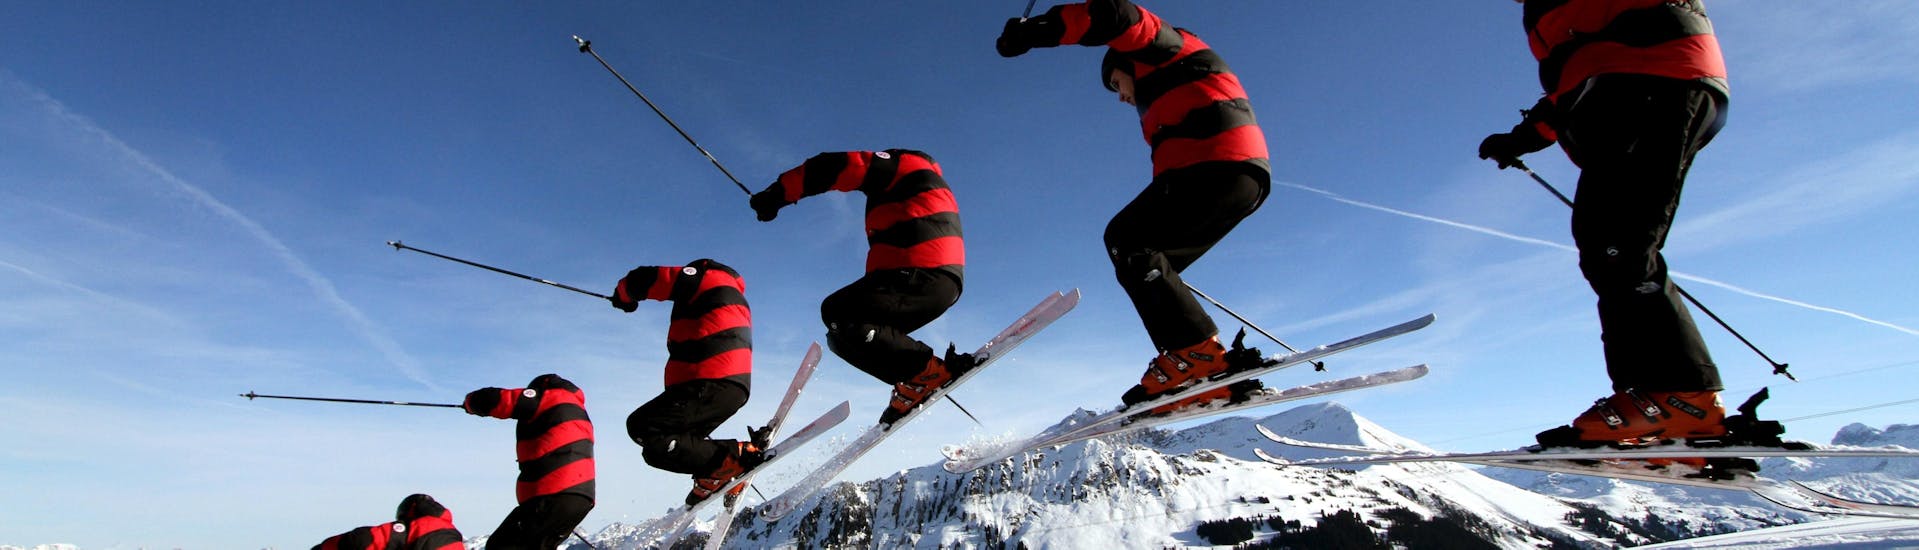 Ein Skifahrer springt beim Privaten Skikurs für Erwachsene aller Levels.